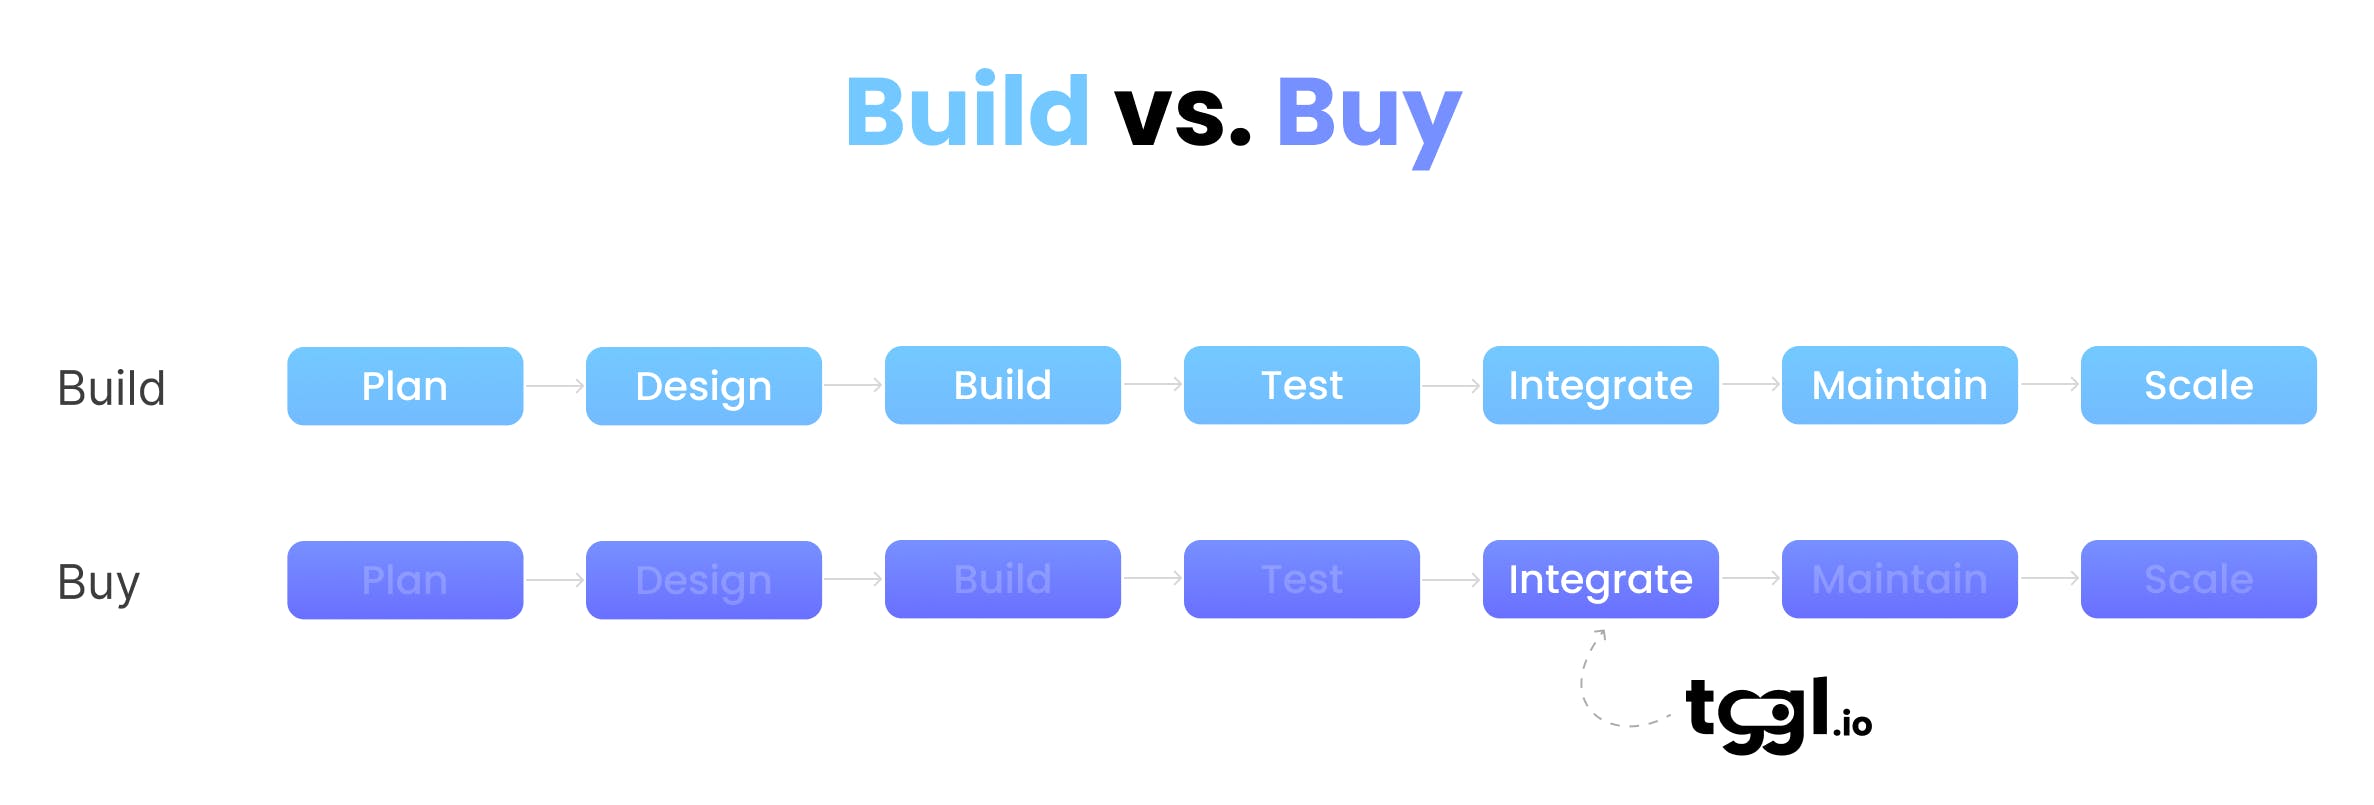 Build vs. buy costs